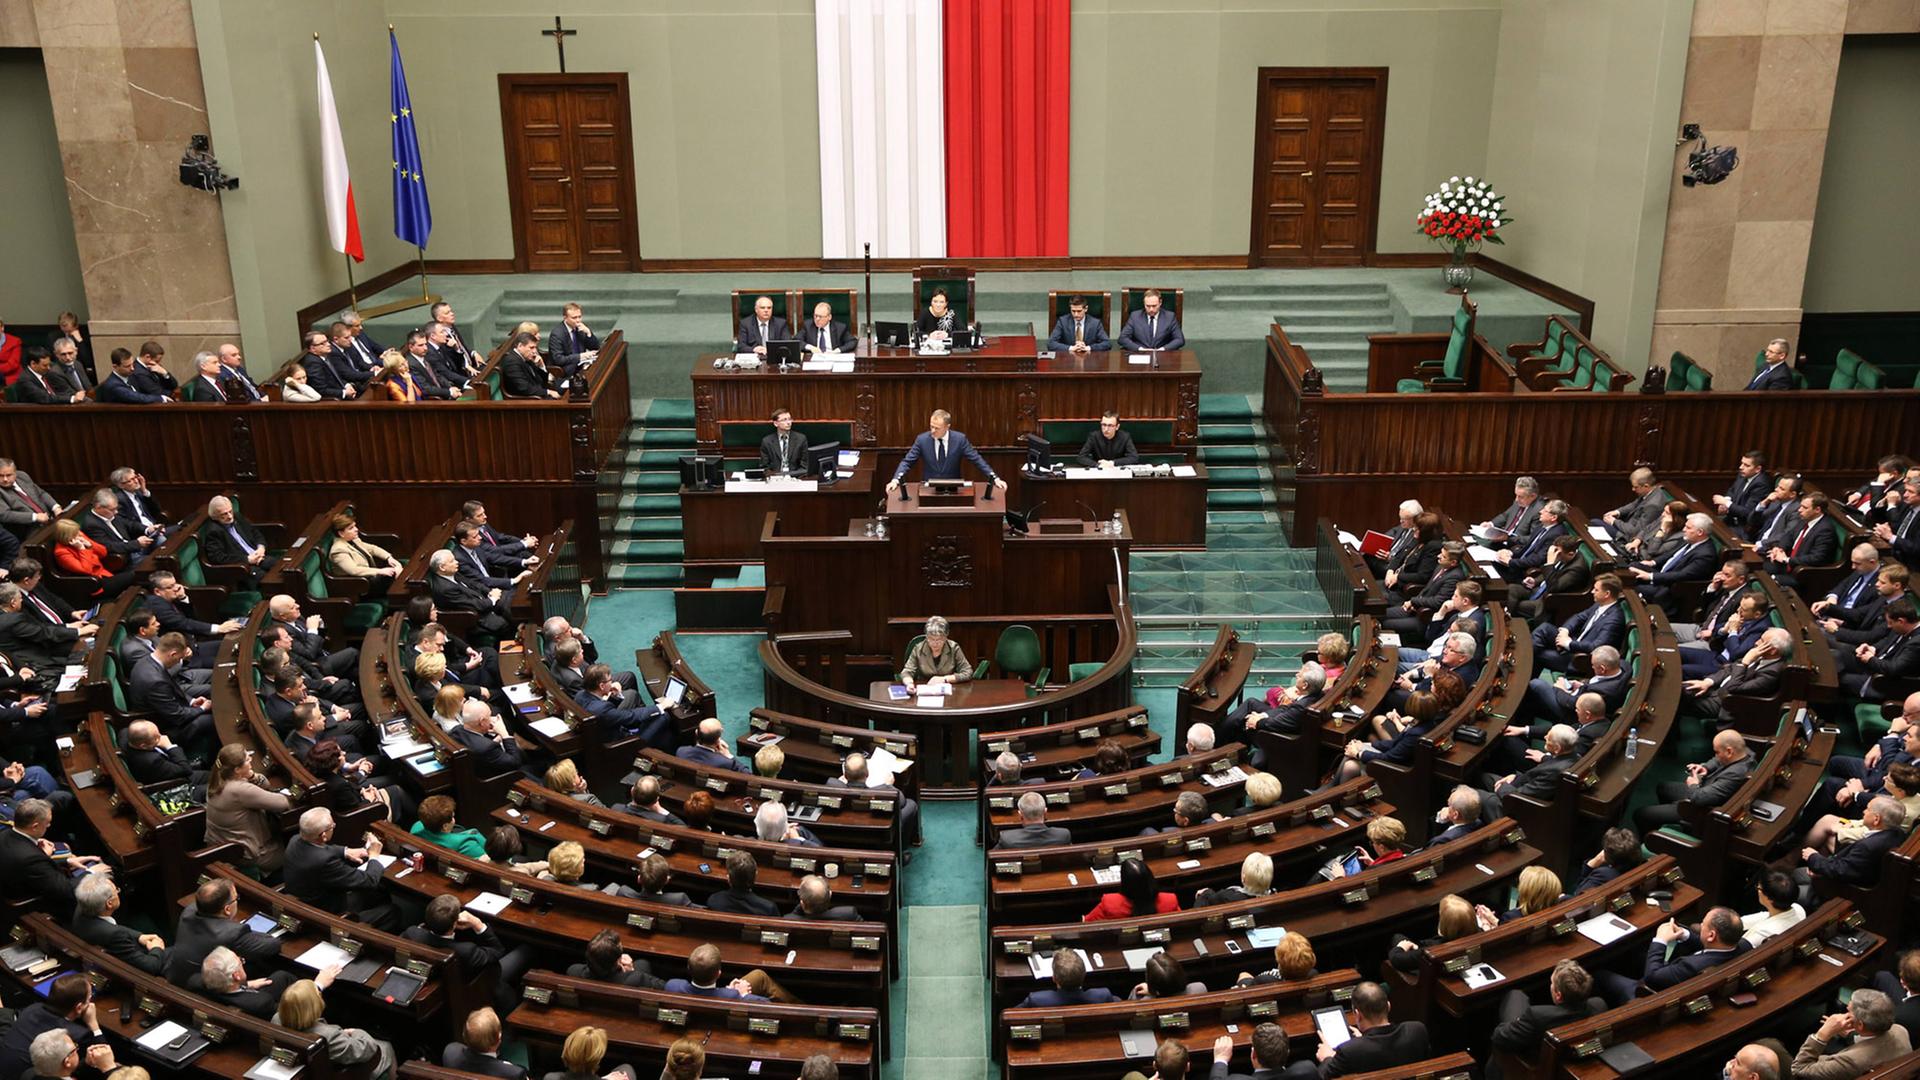 Blick von hinten von der Besuchertribüne auf das vollbesetzte Parlament mit Abgeordneten-Reihen im Halbkreis und das Präsidium unter der polnischen Flagge.